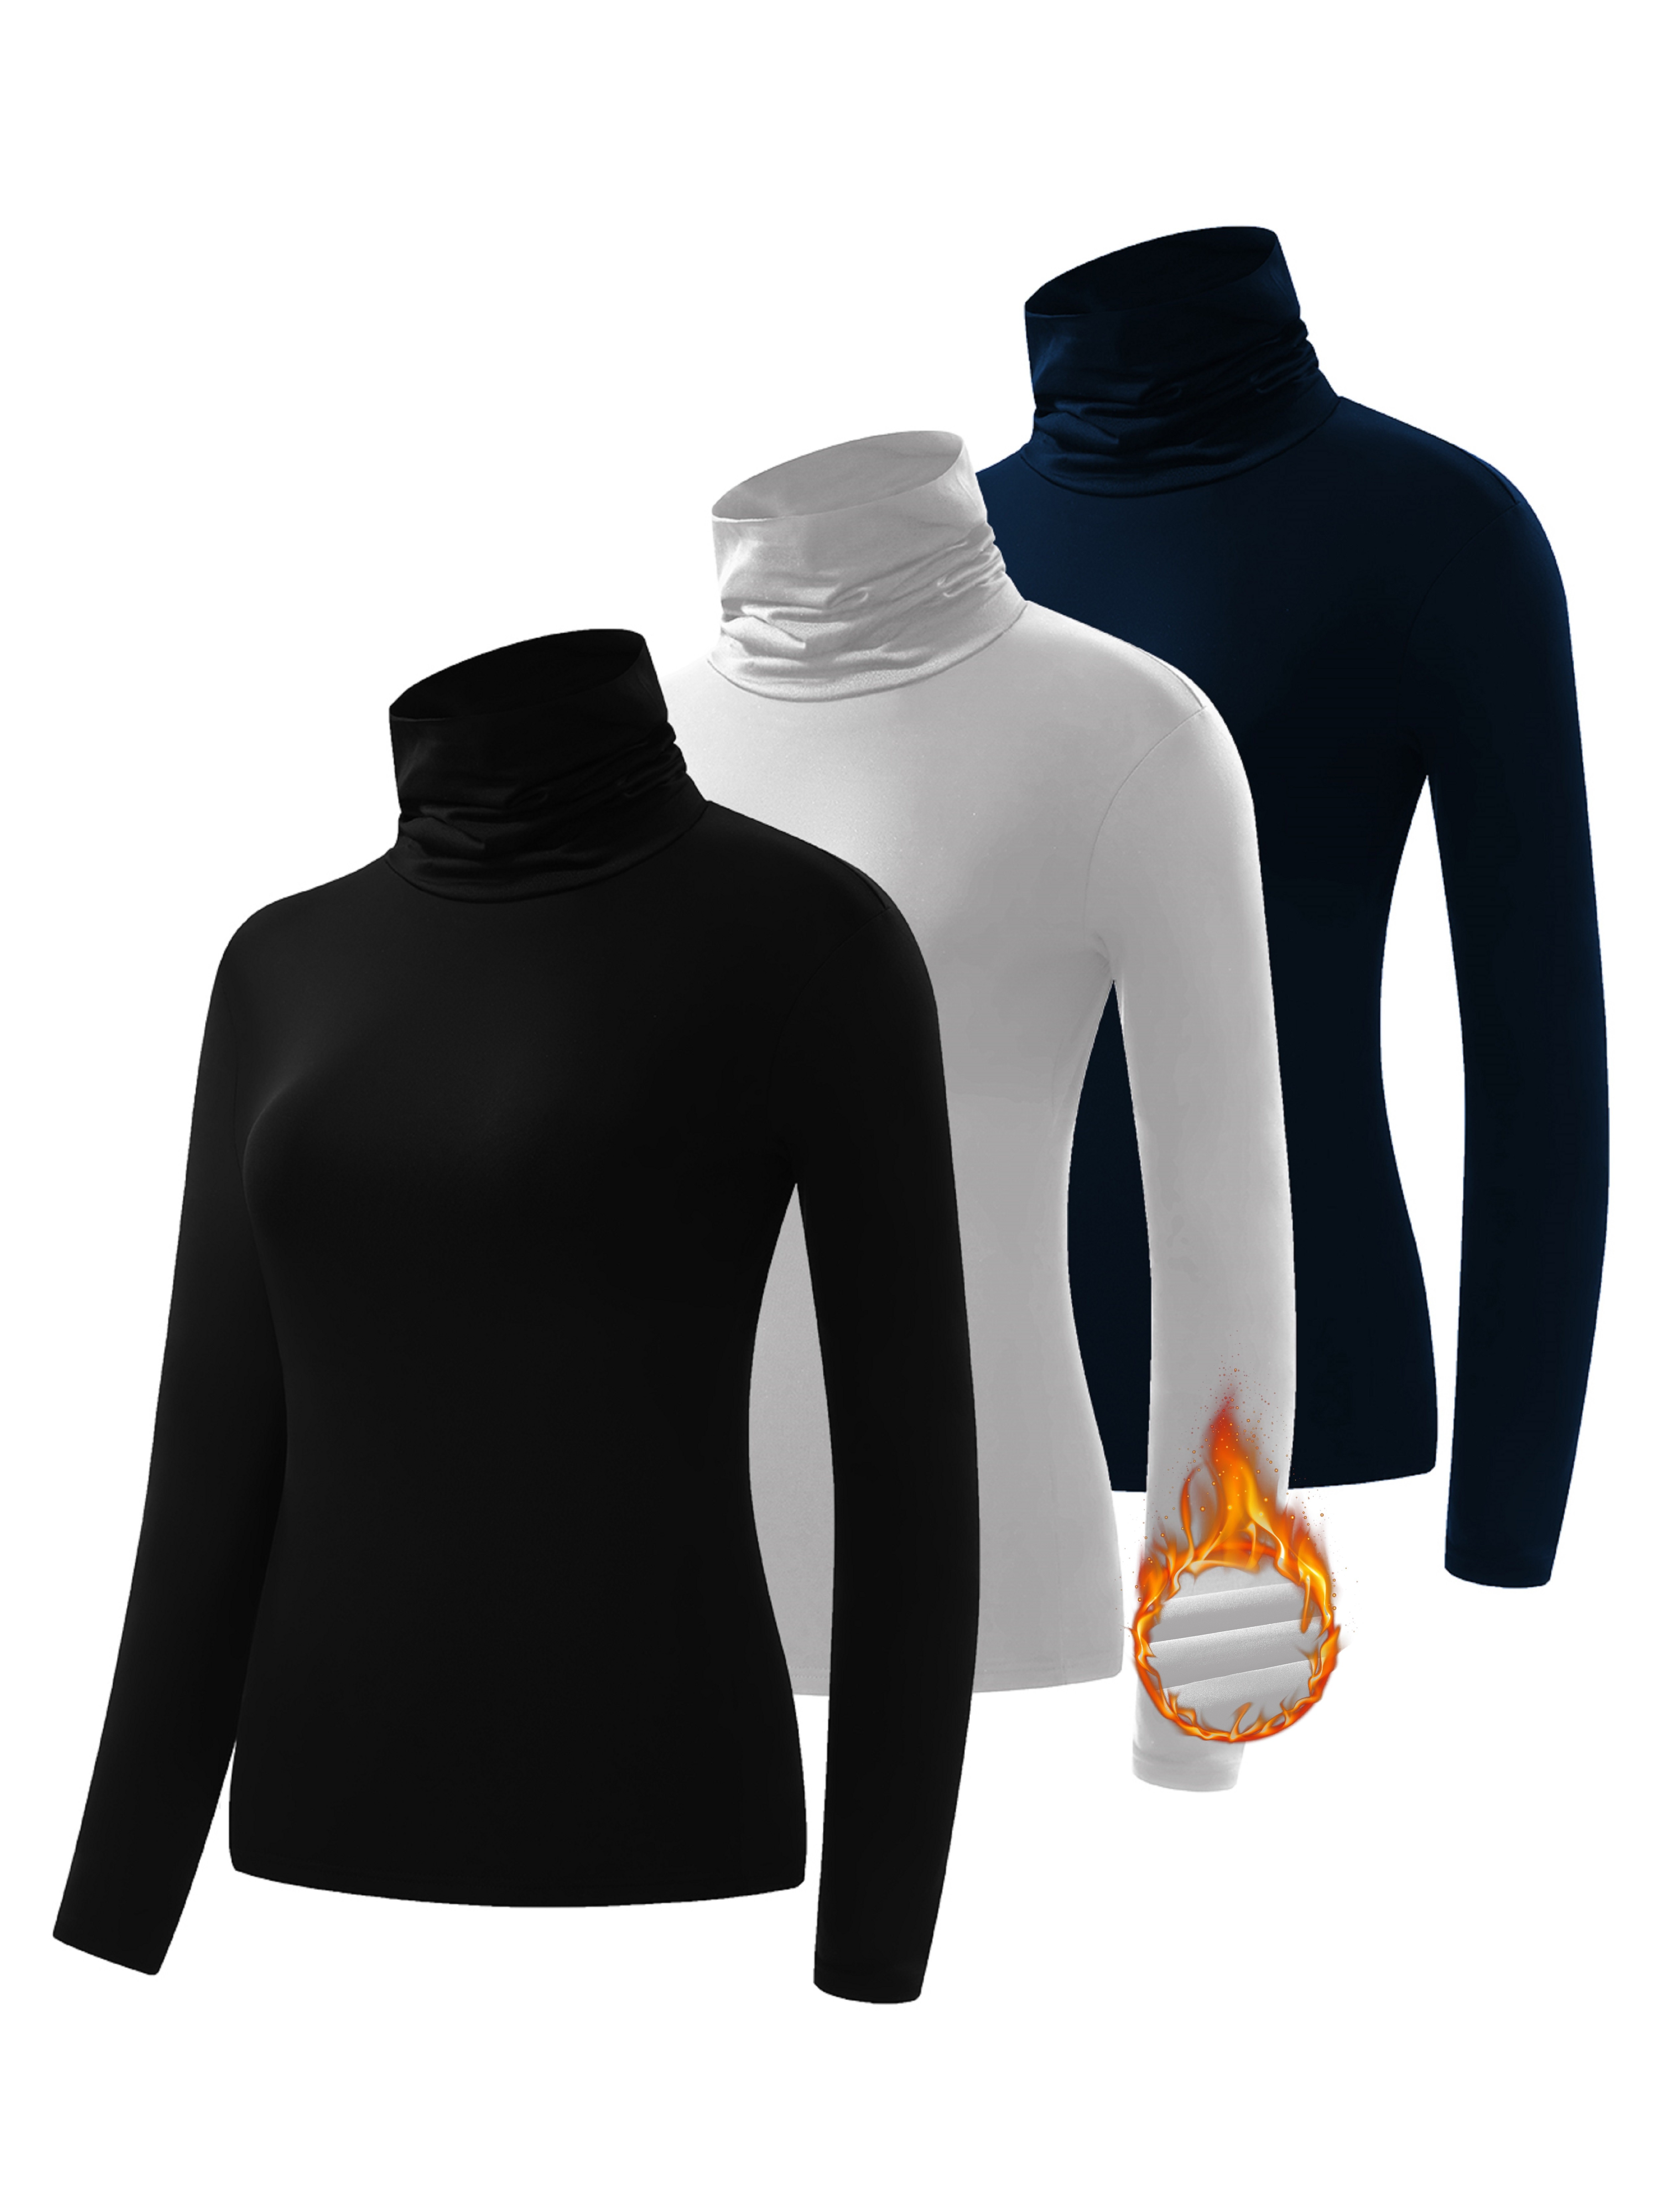 Camisetas térmicas de capa base para mujer, paquete de 2, camiseta de  confort debajo de la bata para mujer